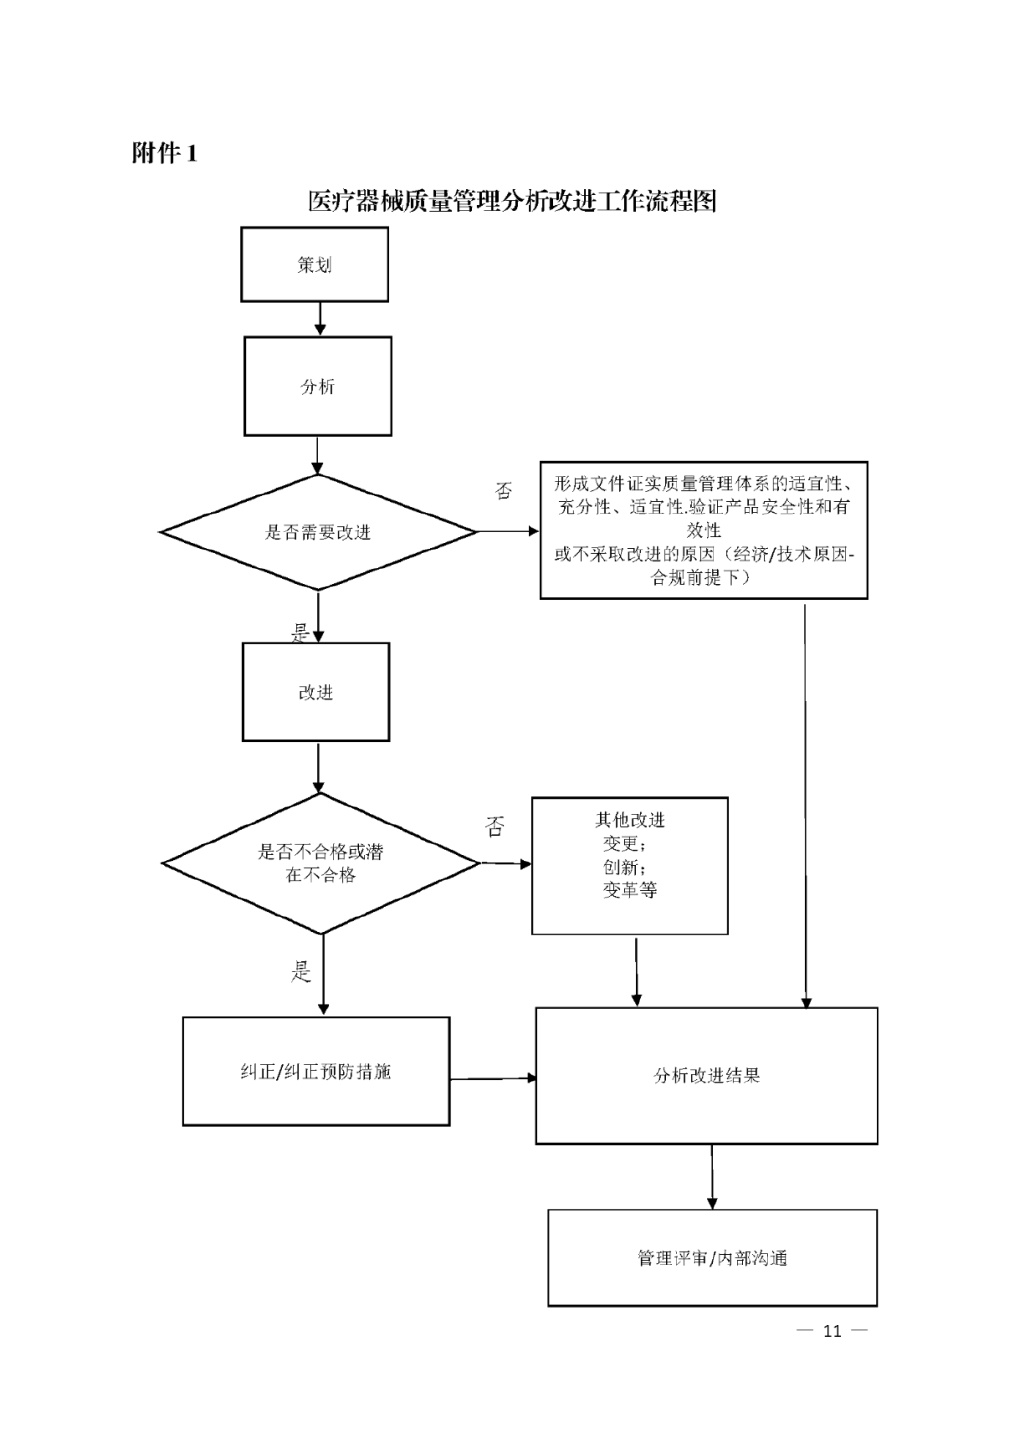 【安徽】发布医疗器械质量管理分析改进工作指南(图11)